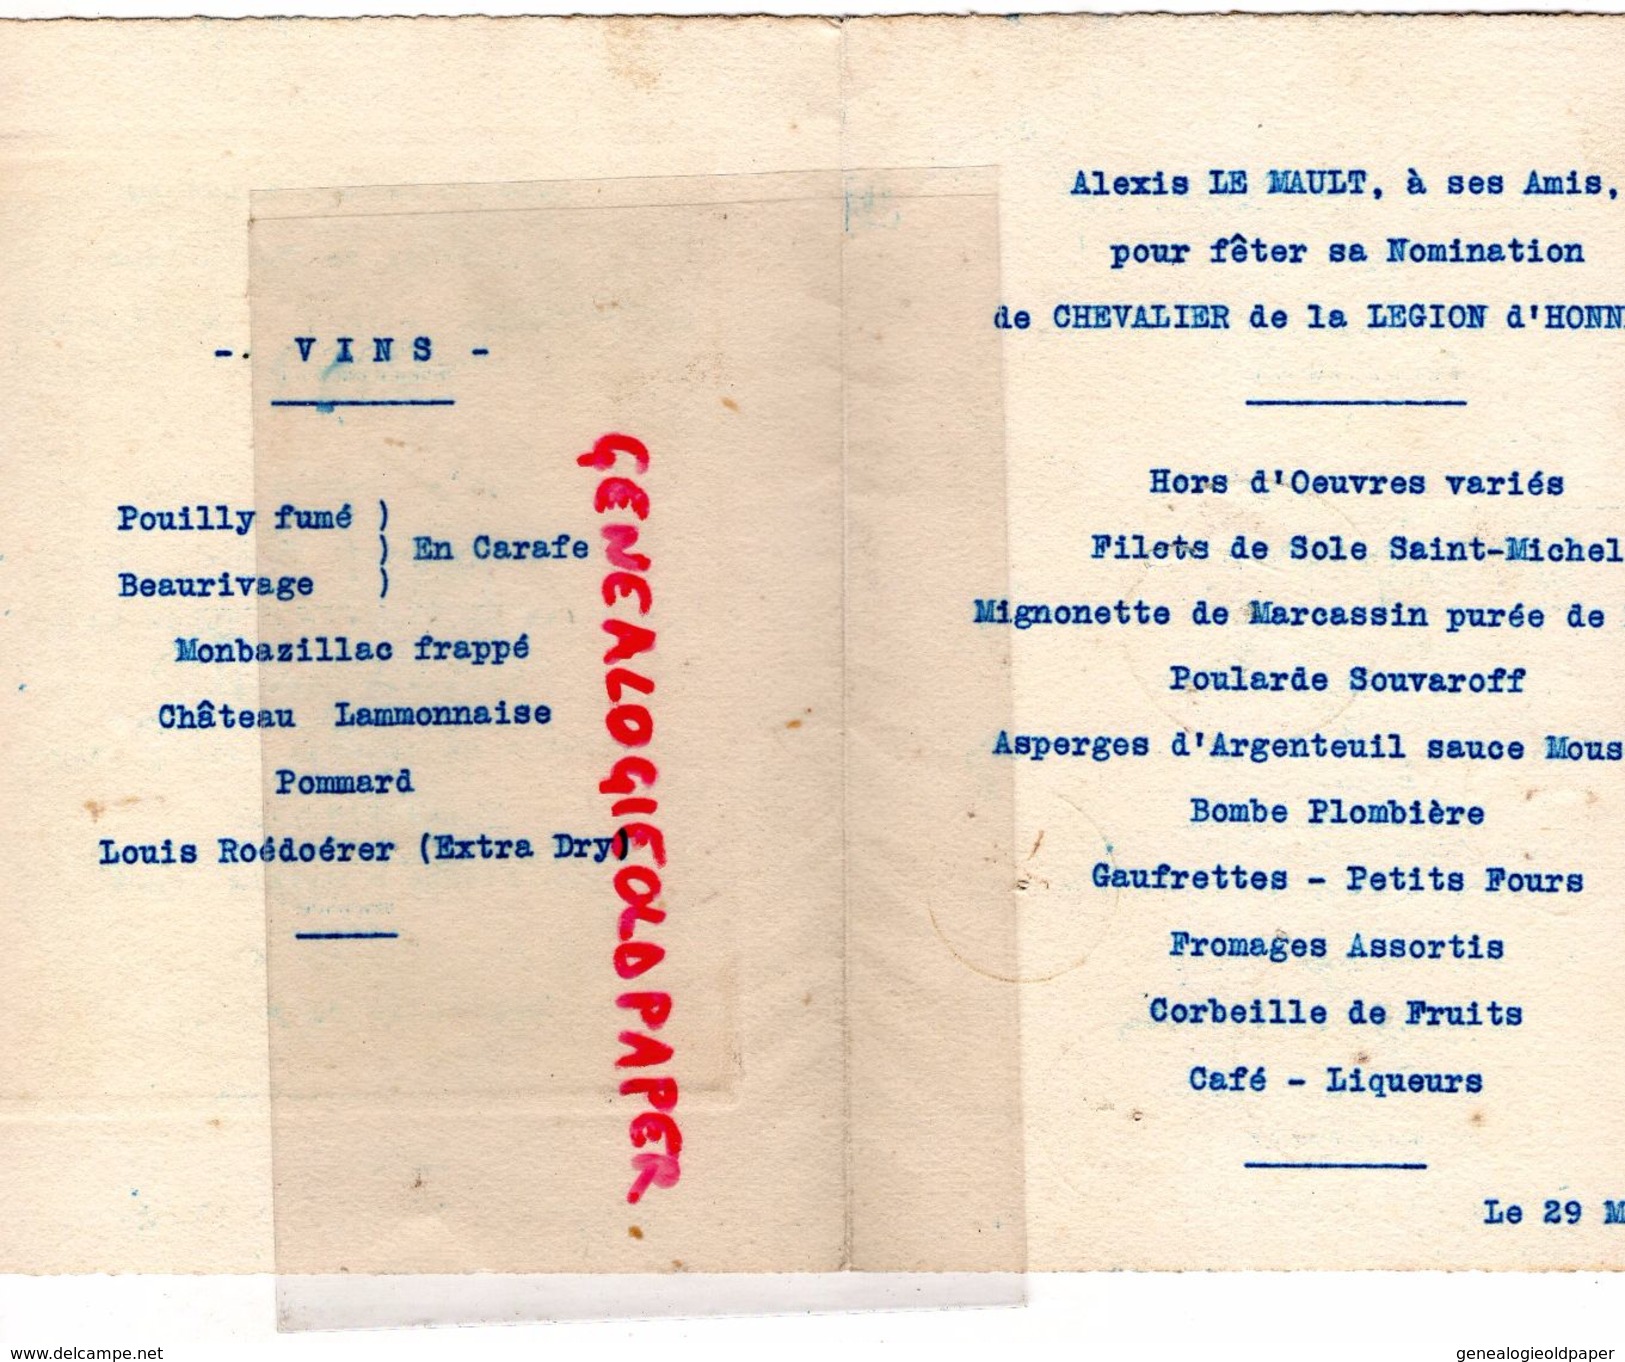 75- PARIS- RARE MENU RESTAURANT SAINT MICHEL-2 PLACE ST MICHEL-ALEXIS LE MAULT CHEVALIER LEGION HONNEUR-29 MARS 1922- - Menükarten